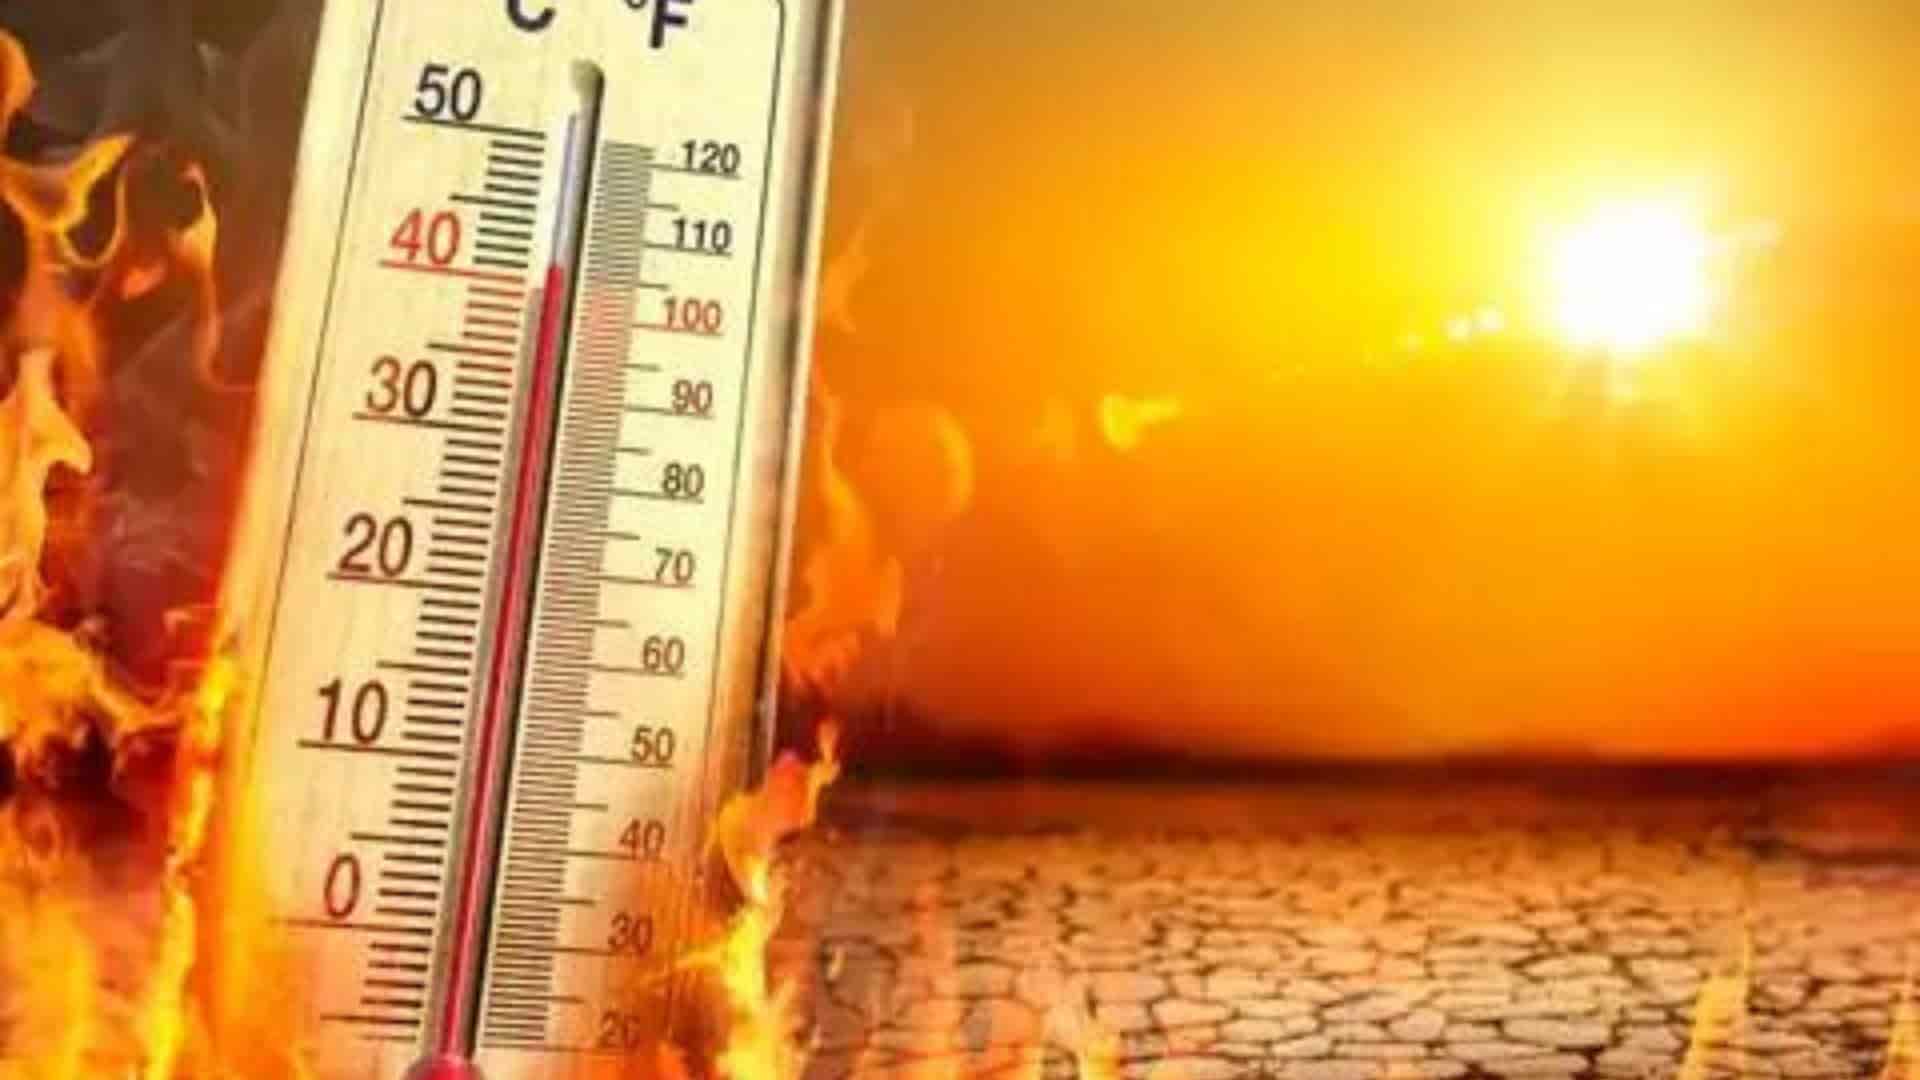 UP Govt to Provide Rs 4 Lakh Compensation for Heat Stroke Deaths; Post-Mortem Mandatory